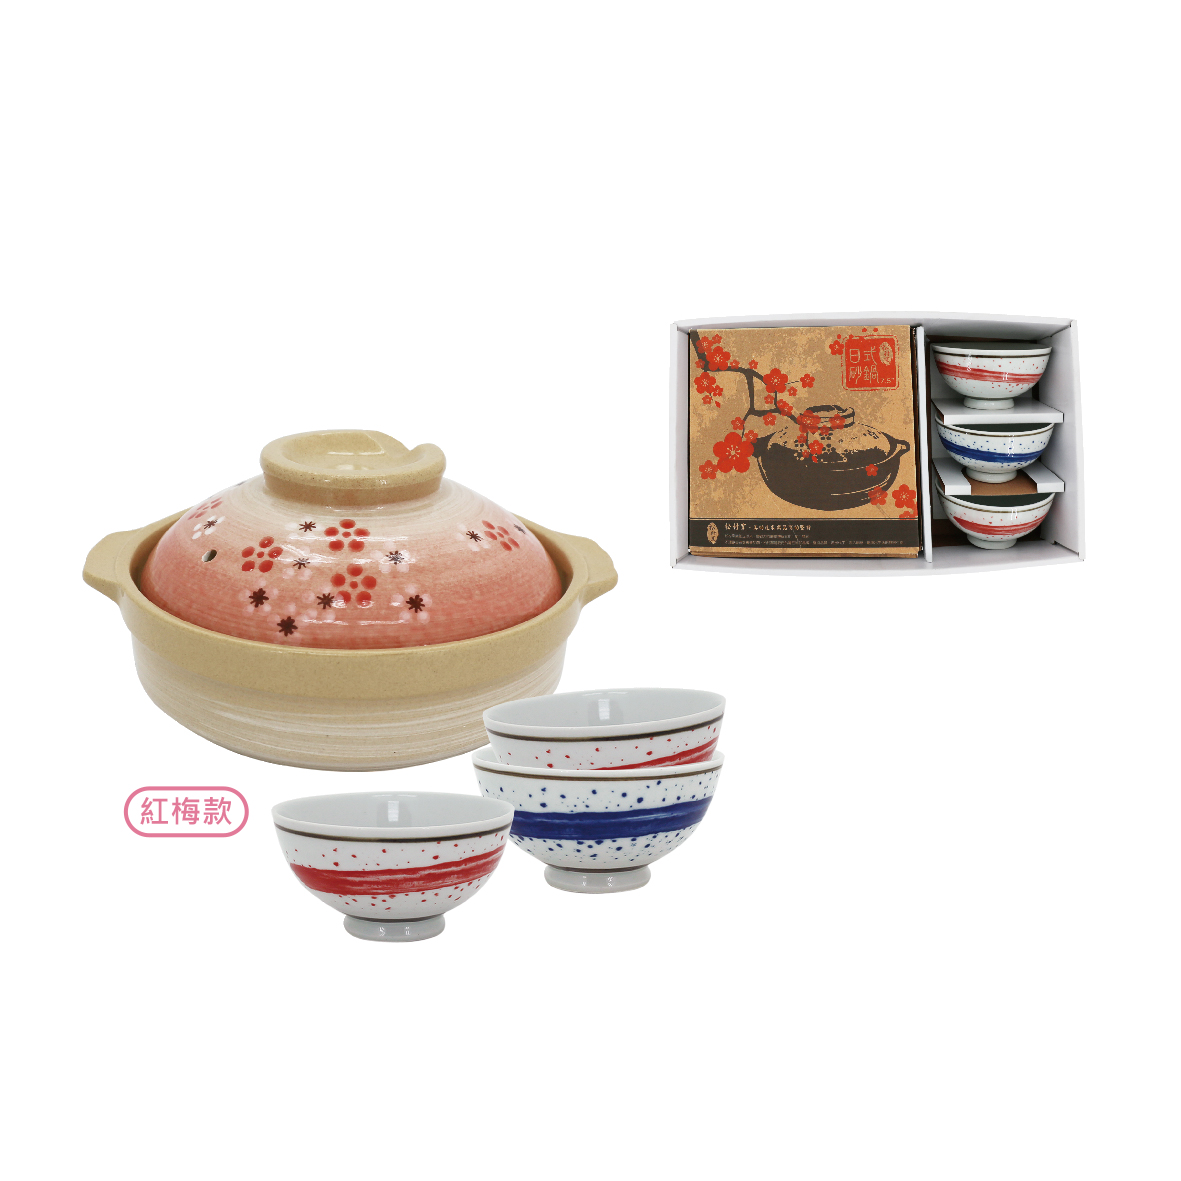 松村窯3手繪雲彩碗+7.5吋砂鍋-紅梅